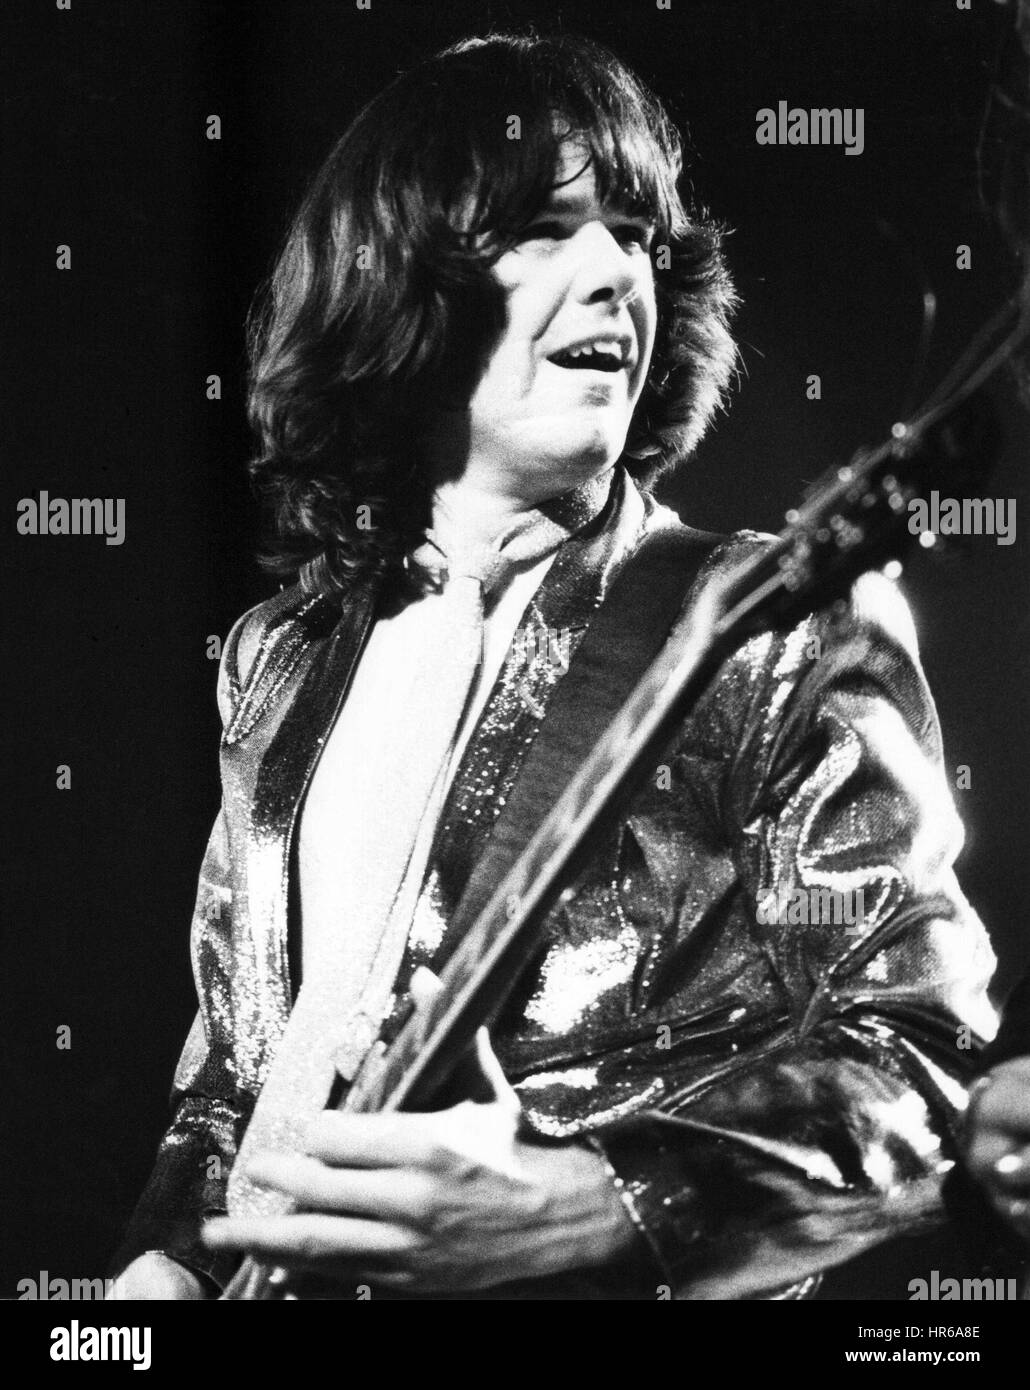 Gary Moore, Gitarrist in Irish Rock band Thin Lizzy, live auf der Bühne in London, England am 27. Juni 1978 führt. Stockfoto